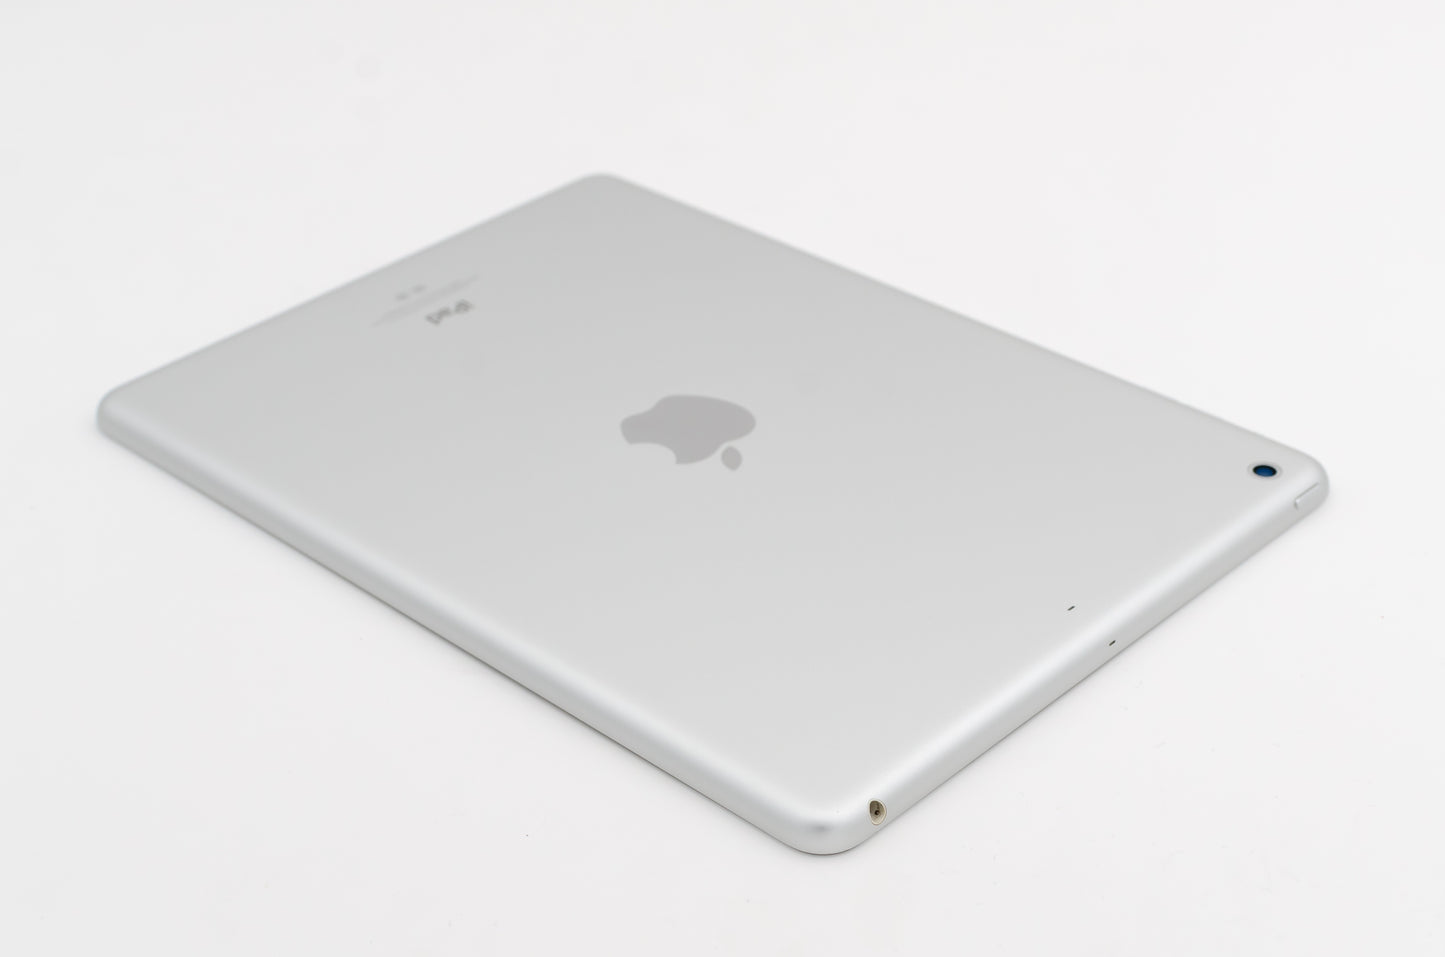 apple-2013-9.7-inch-ipad-air-1-a1474-silver/white-4